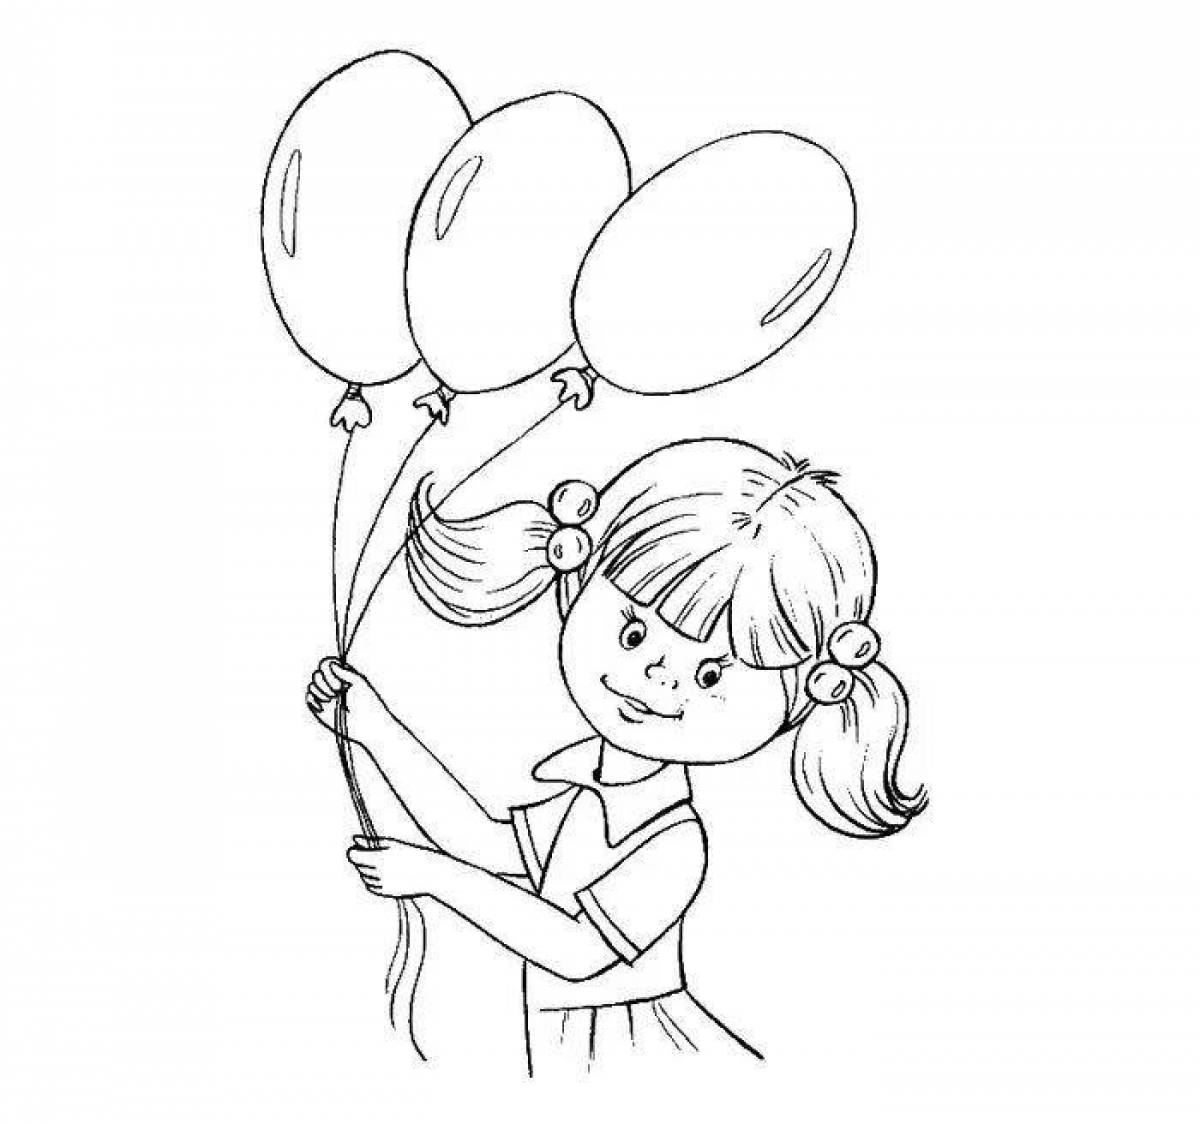 Balloon girl #6